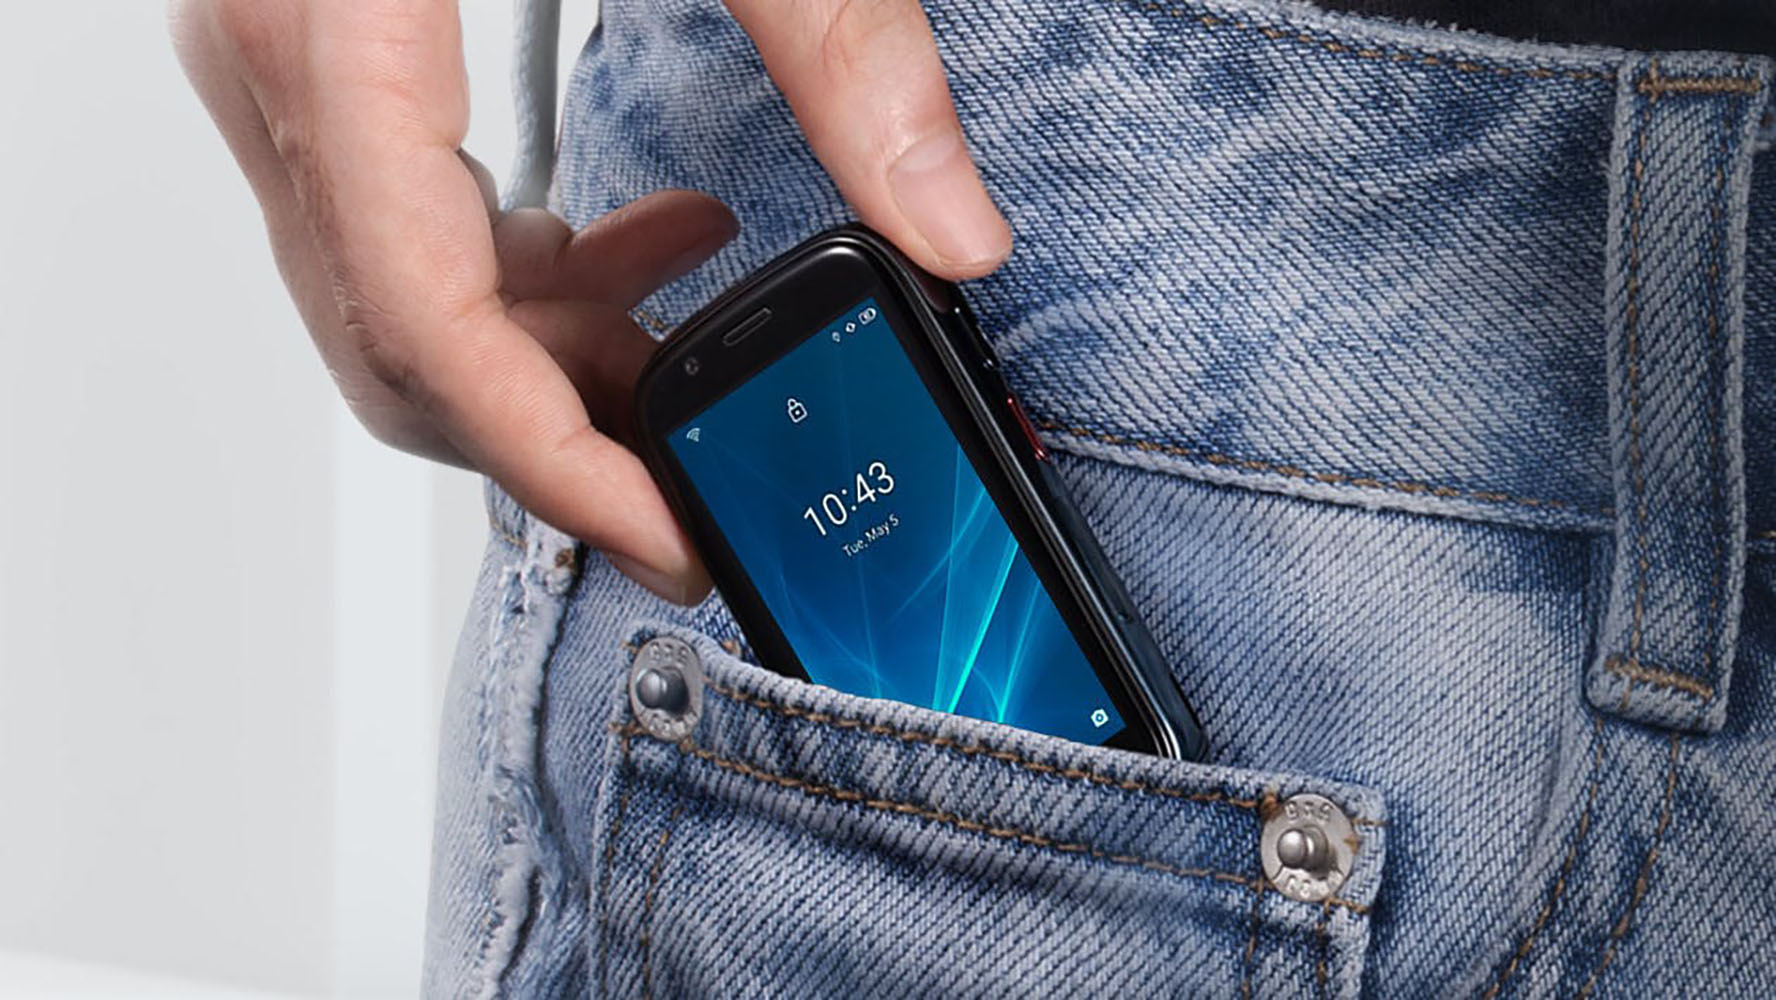 Jelly 2 to smartfon, który zmieścisz w portmonetce